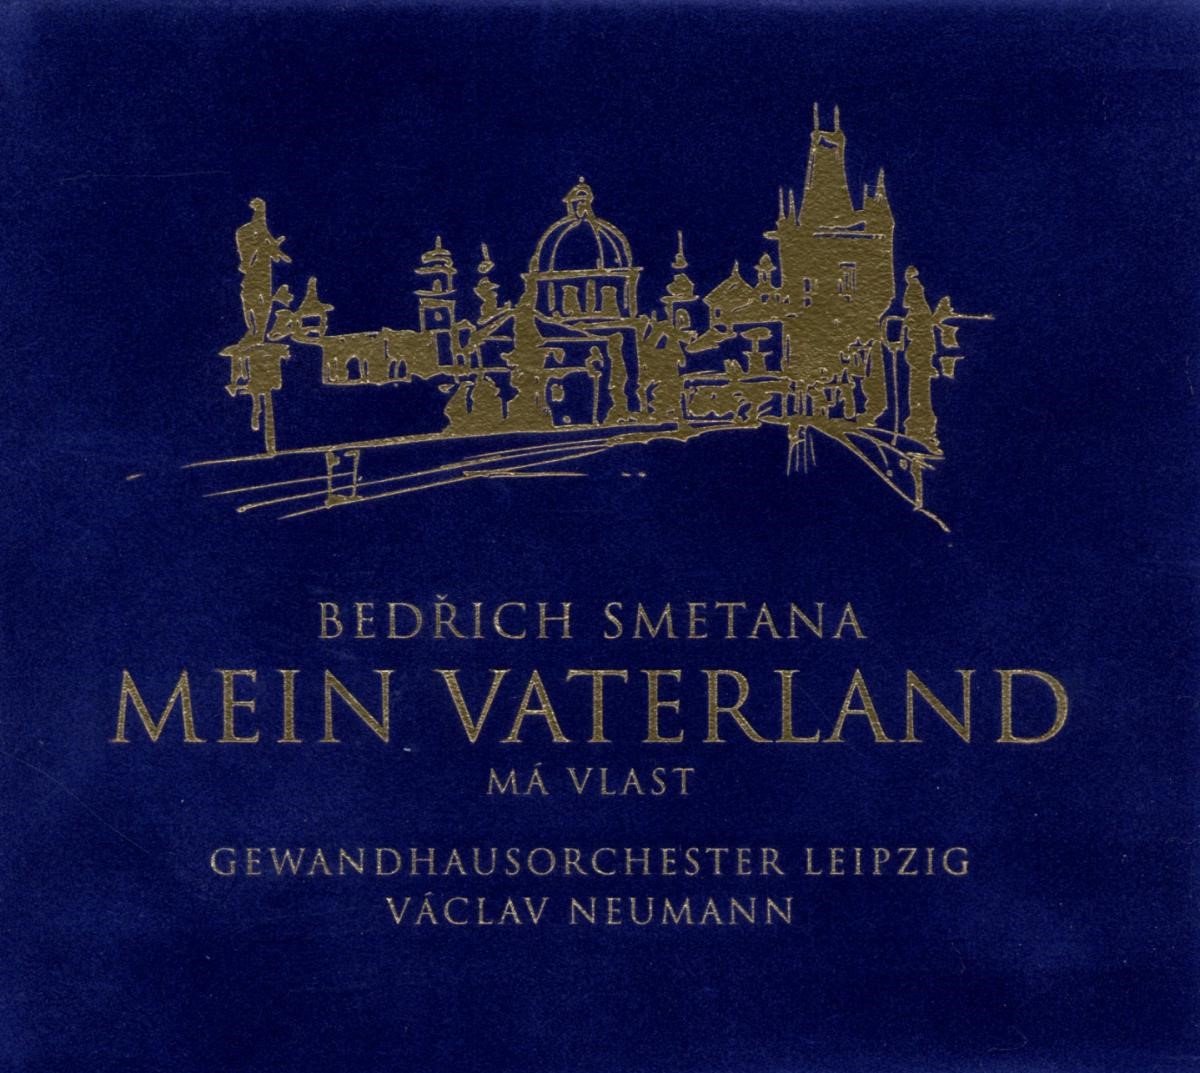 Bedrich Smetana & Gewandhausorchester Leipzig - Mein Vaterland (CD)